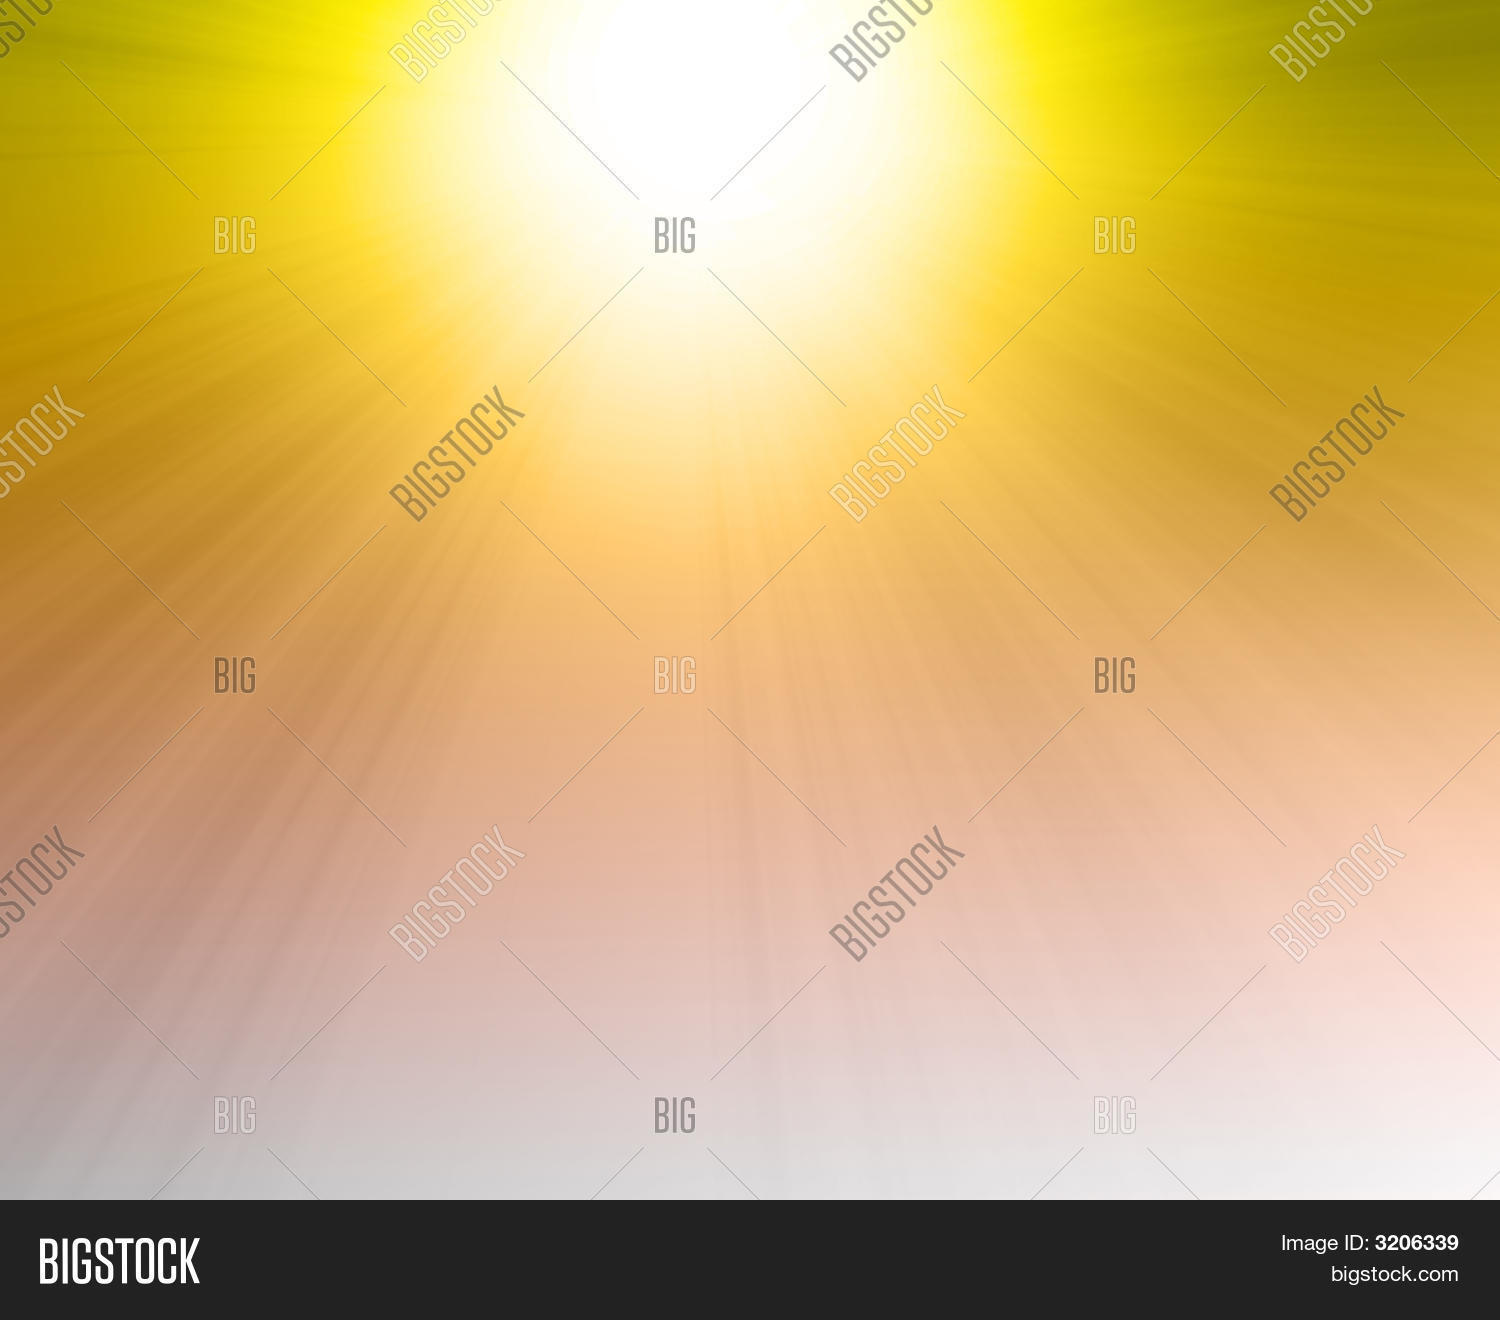 Burning Hot Sun Image & Photo | Bigstock